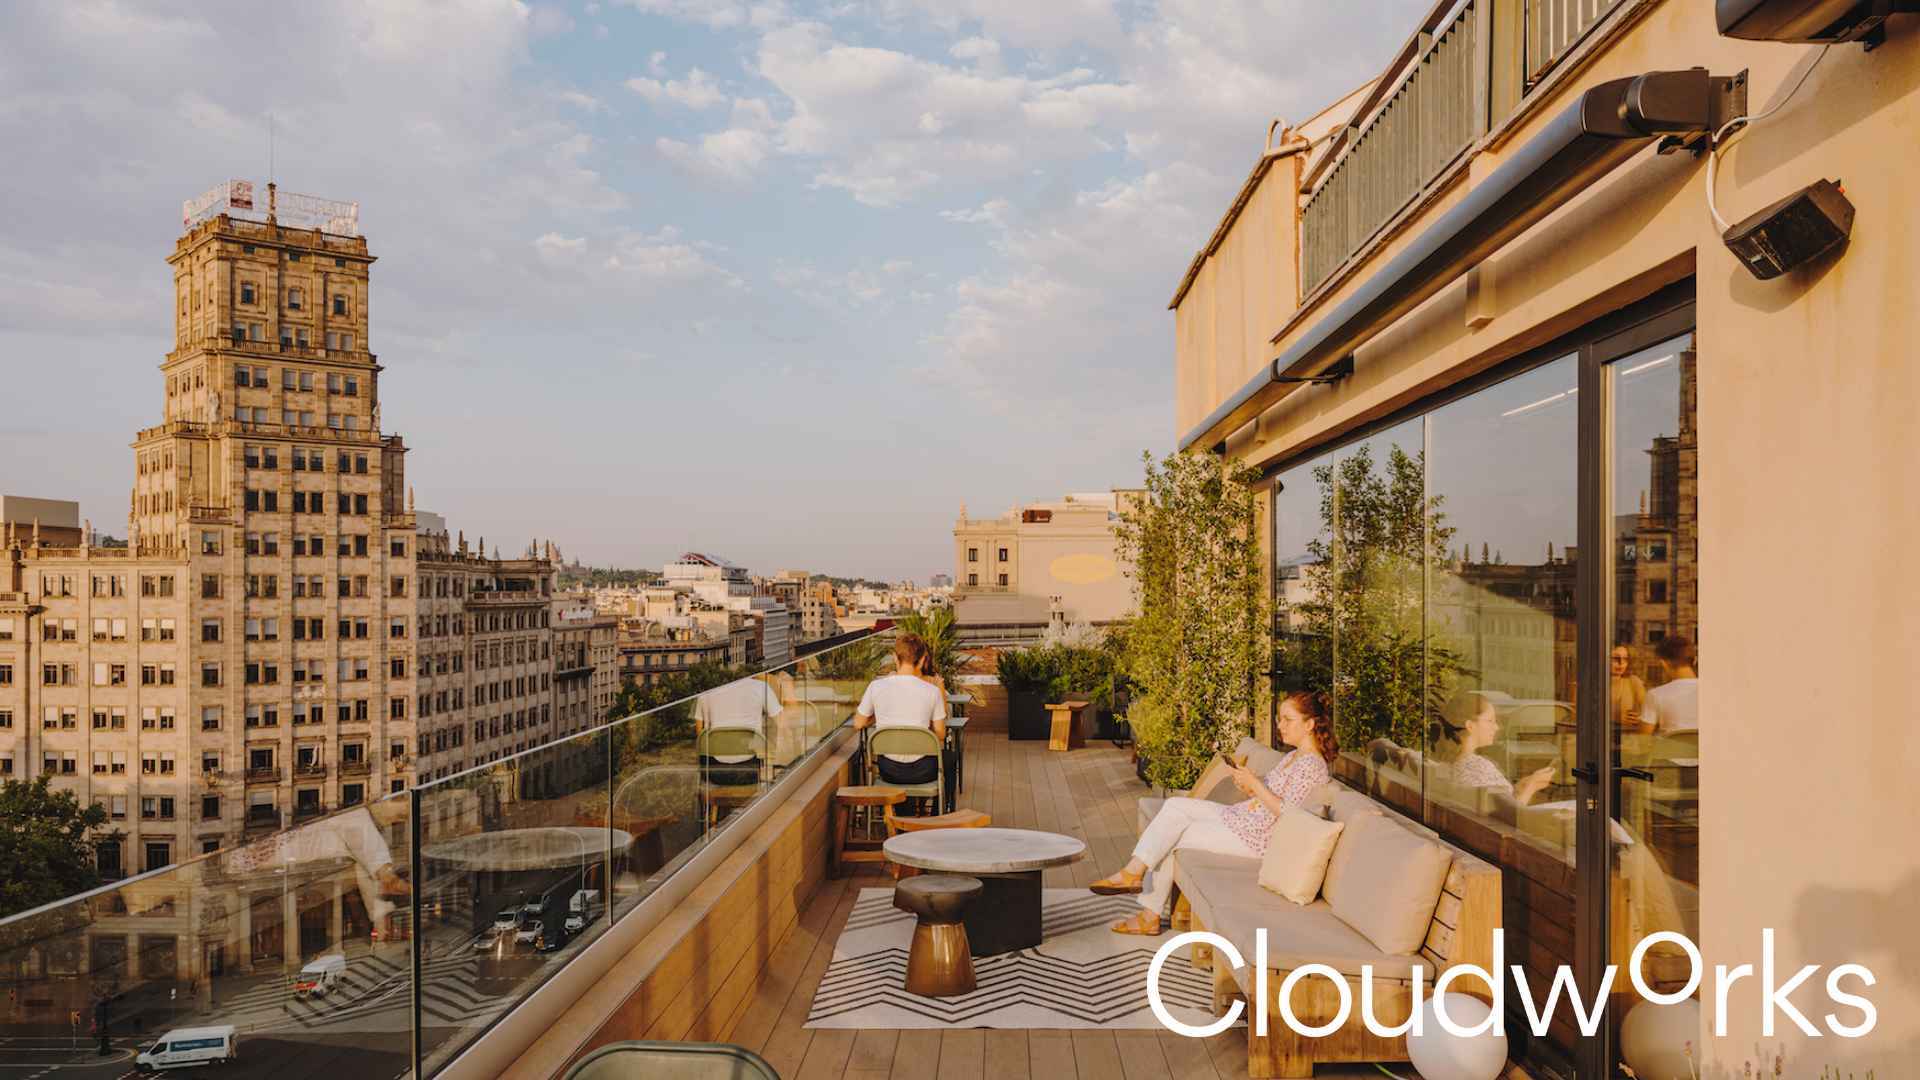 Cloudworks Passeig de Gràcia cover image